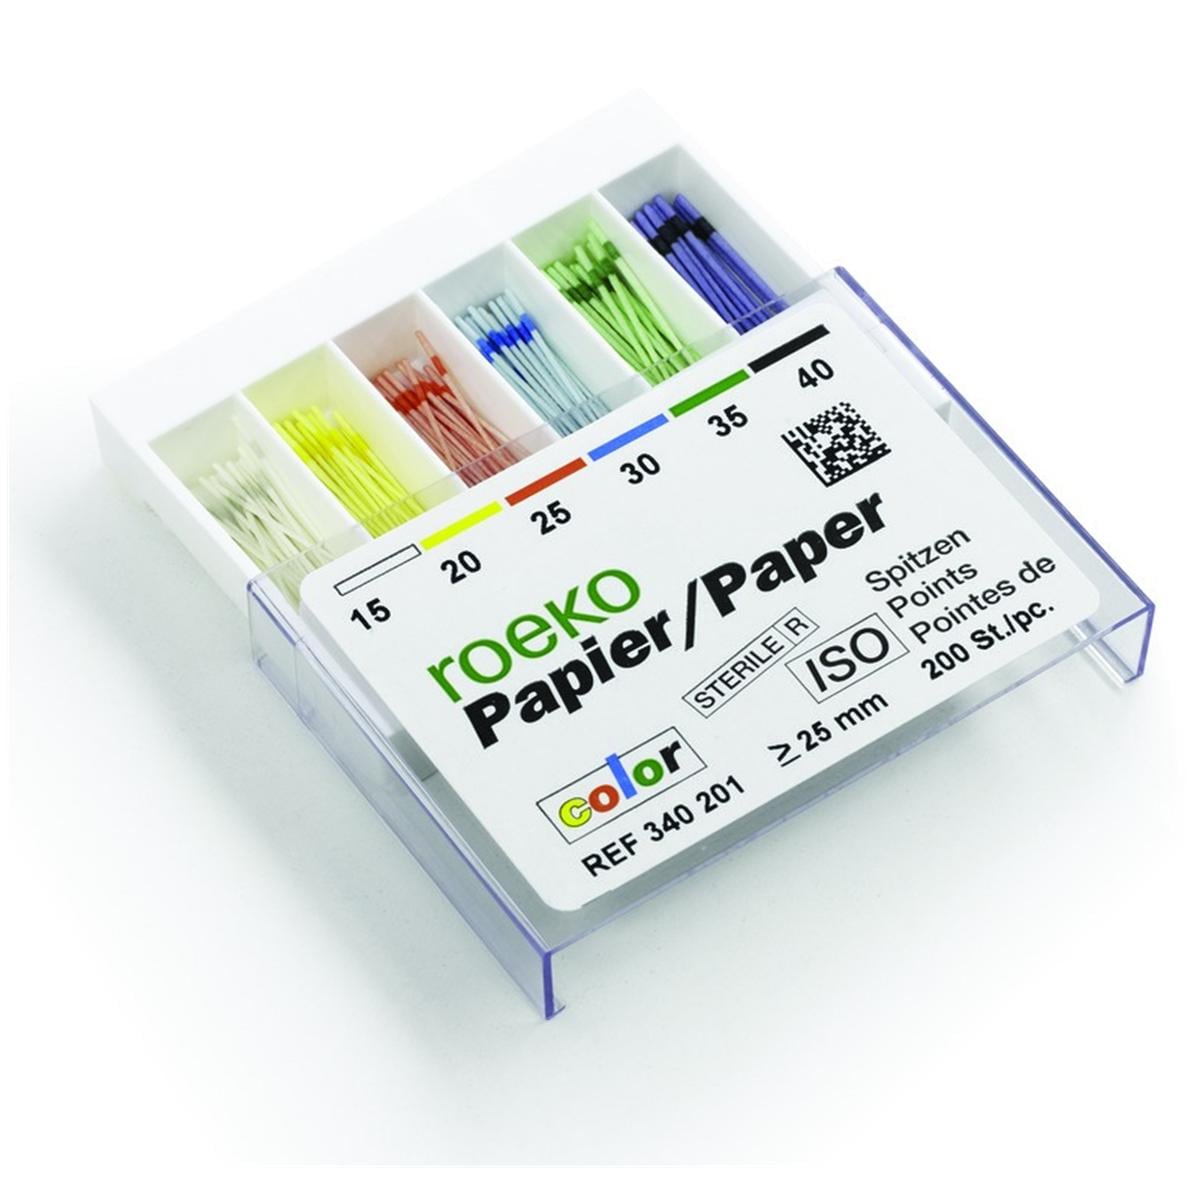 Pointes Papier Iso Color ROEKO - n 35 - Bote de 200